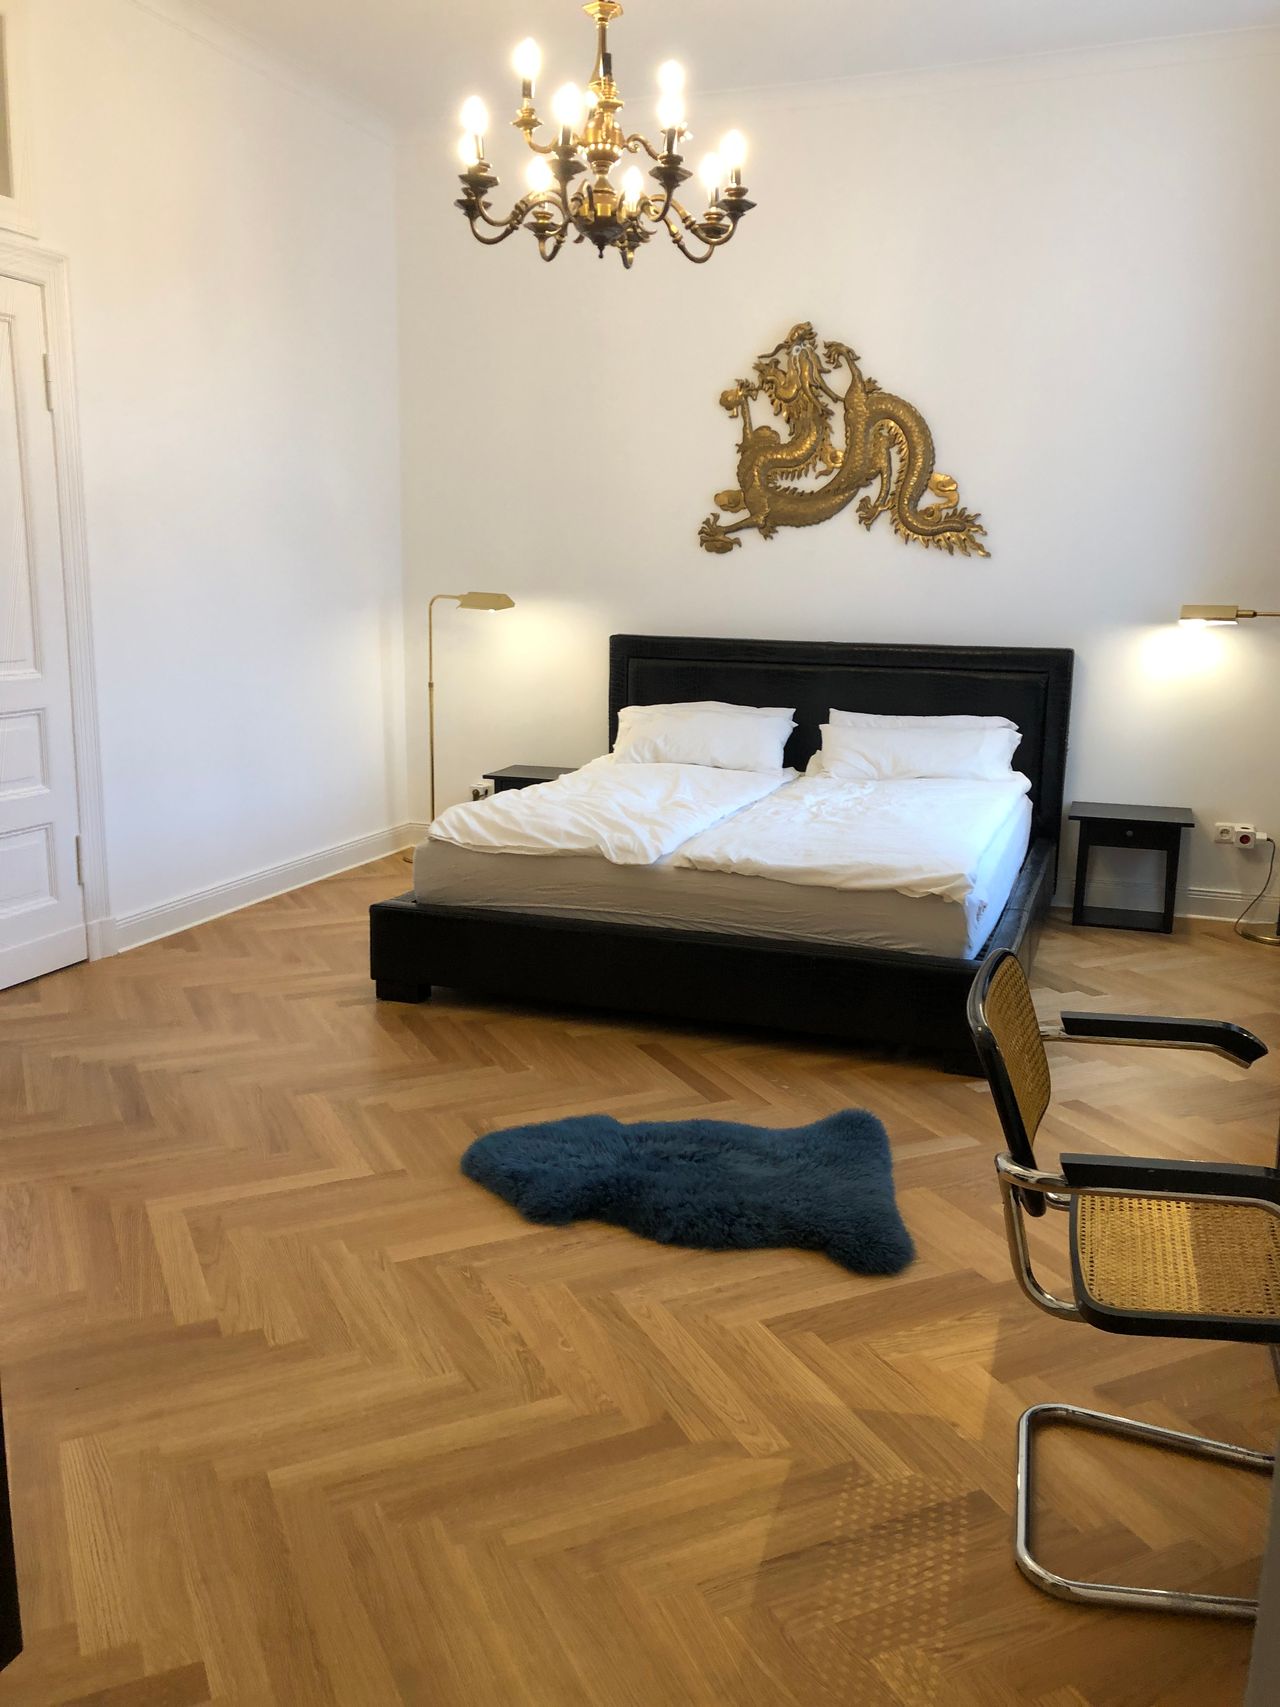 Luxuriöse und frisch sanierte 103 m² Wohnung mit 2 Badezimmern in ruhiger Seitenstraße zum Kurfürstendamm, Berlin-West